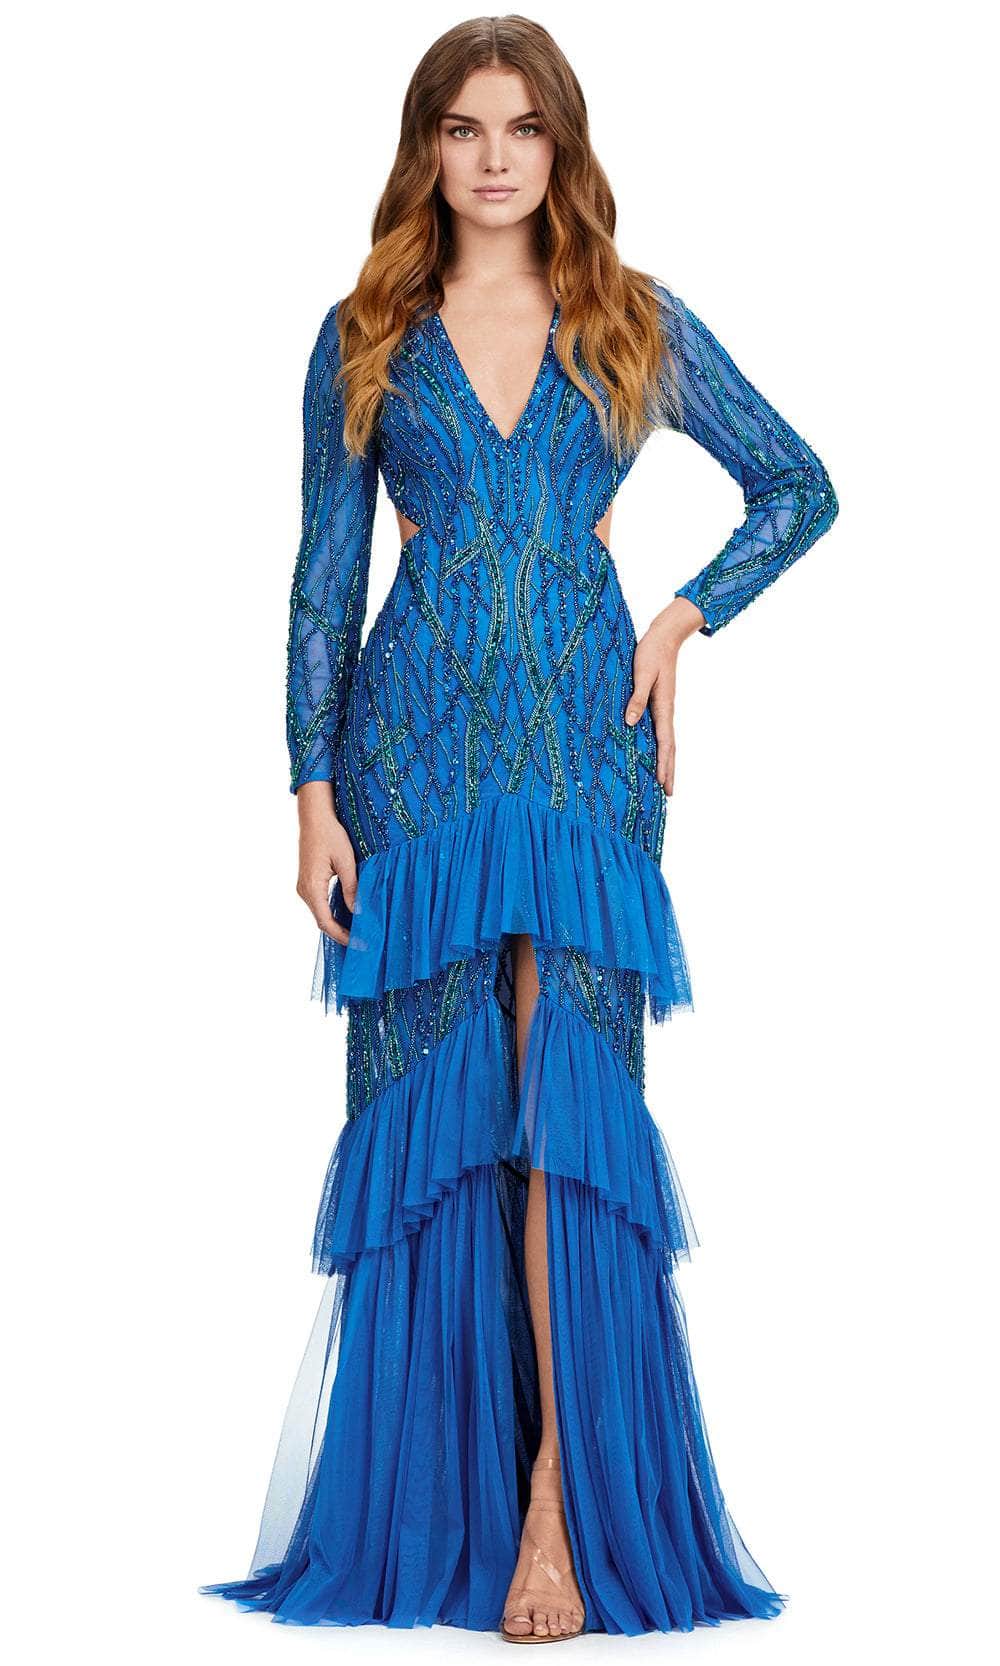 Ashley Lauren 11436 - V-Neck Sequin Embellished Evening Gown
